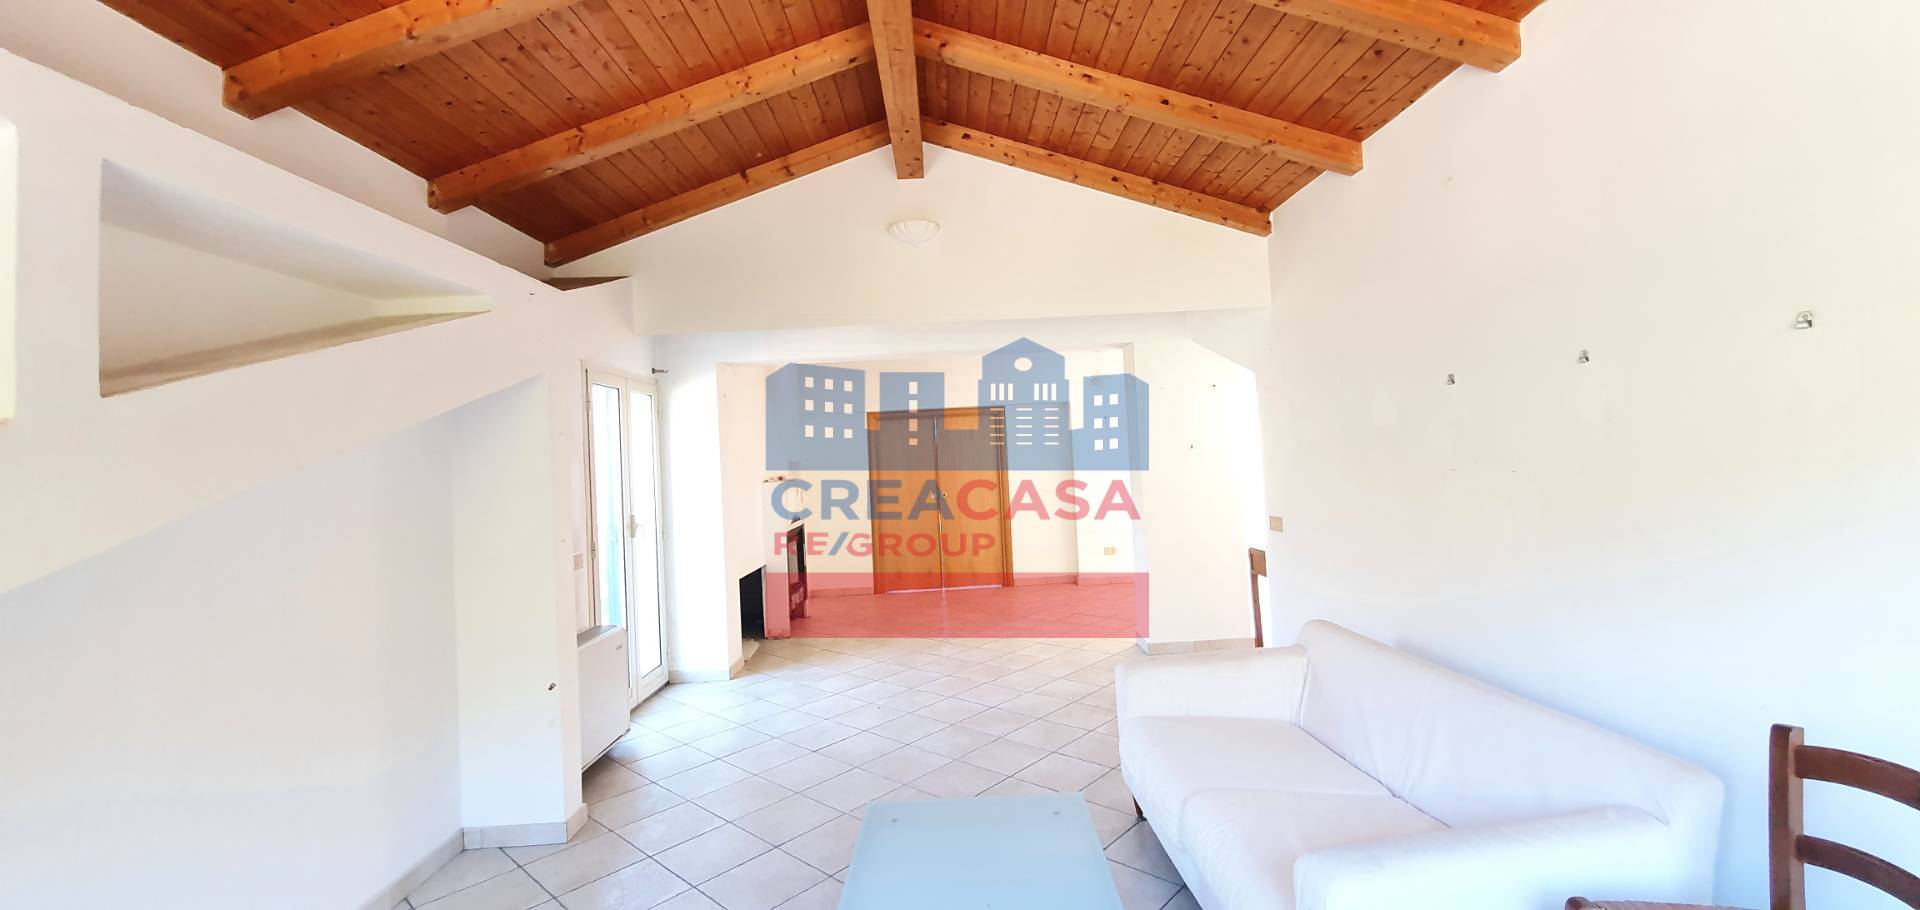 Appartamento in vendita a Graniti, 5 locali, prezzo € 93.000 | PortaleAgenzieImmobiliari.it